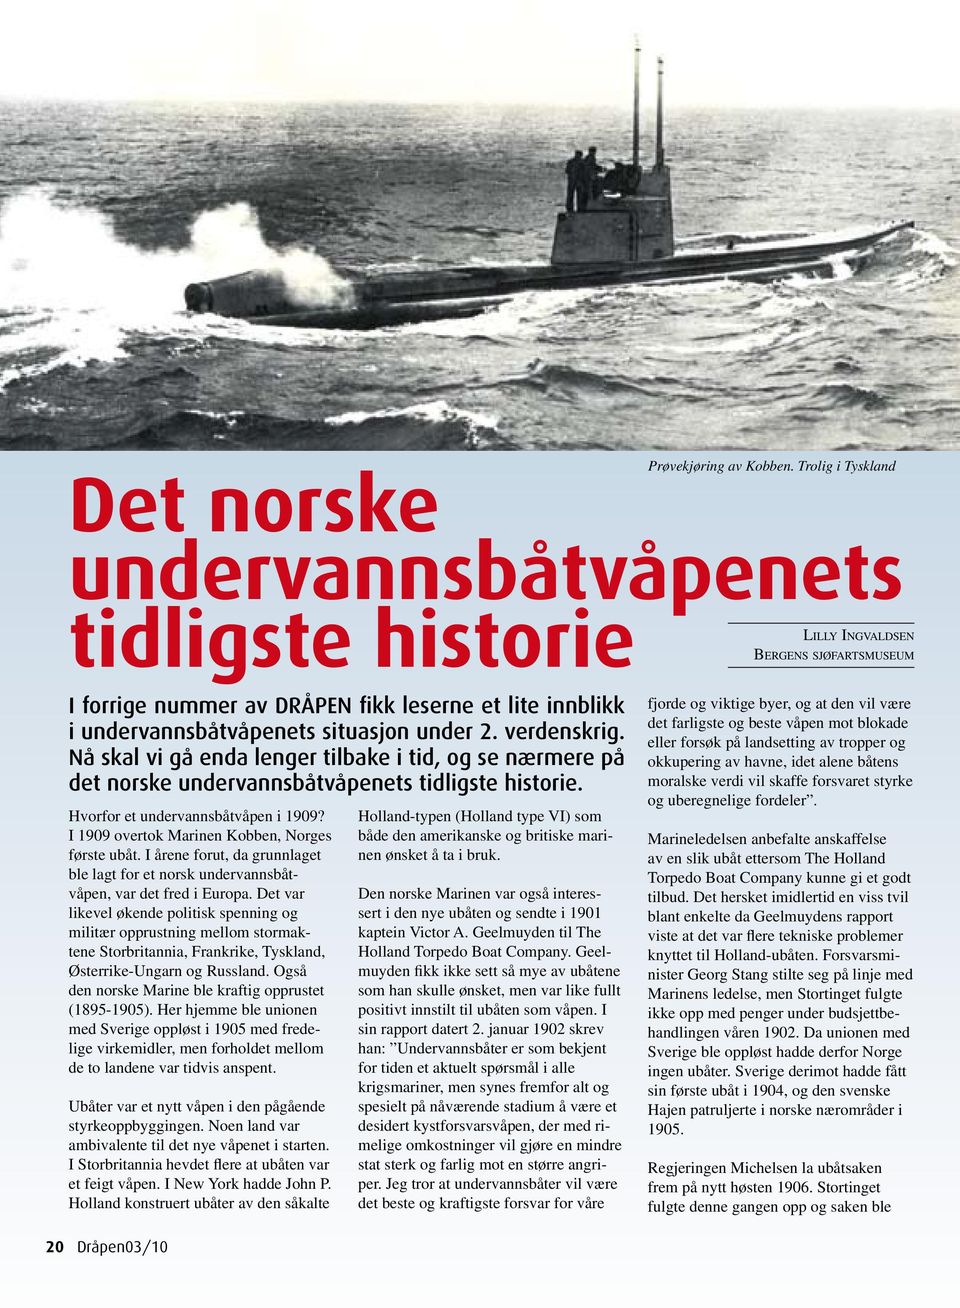 situasjon under 2. verdenskrig. Nå skal vi gå enda lenger tilbake i tid, og se nærmere på det norske undervannsbåtvåpenets tidligste historie. Hvorfor et undervannsbåtvåpen i 1909?